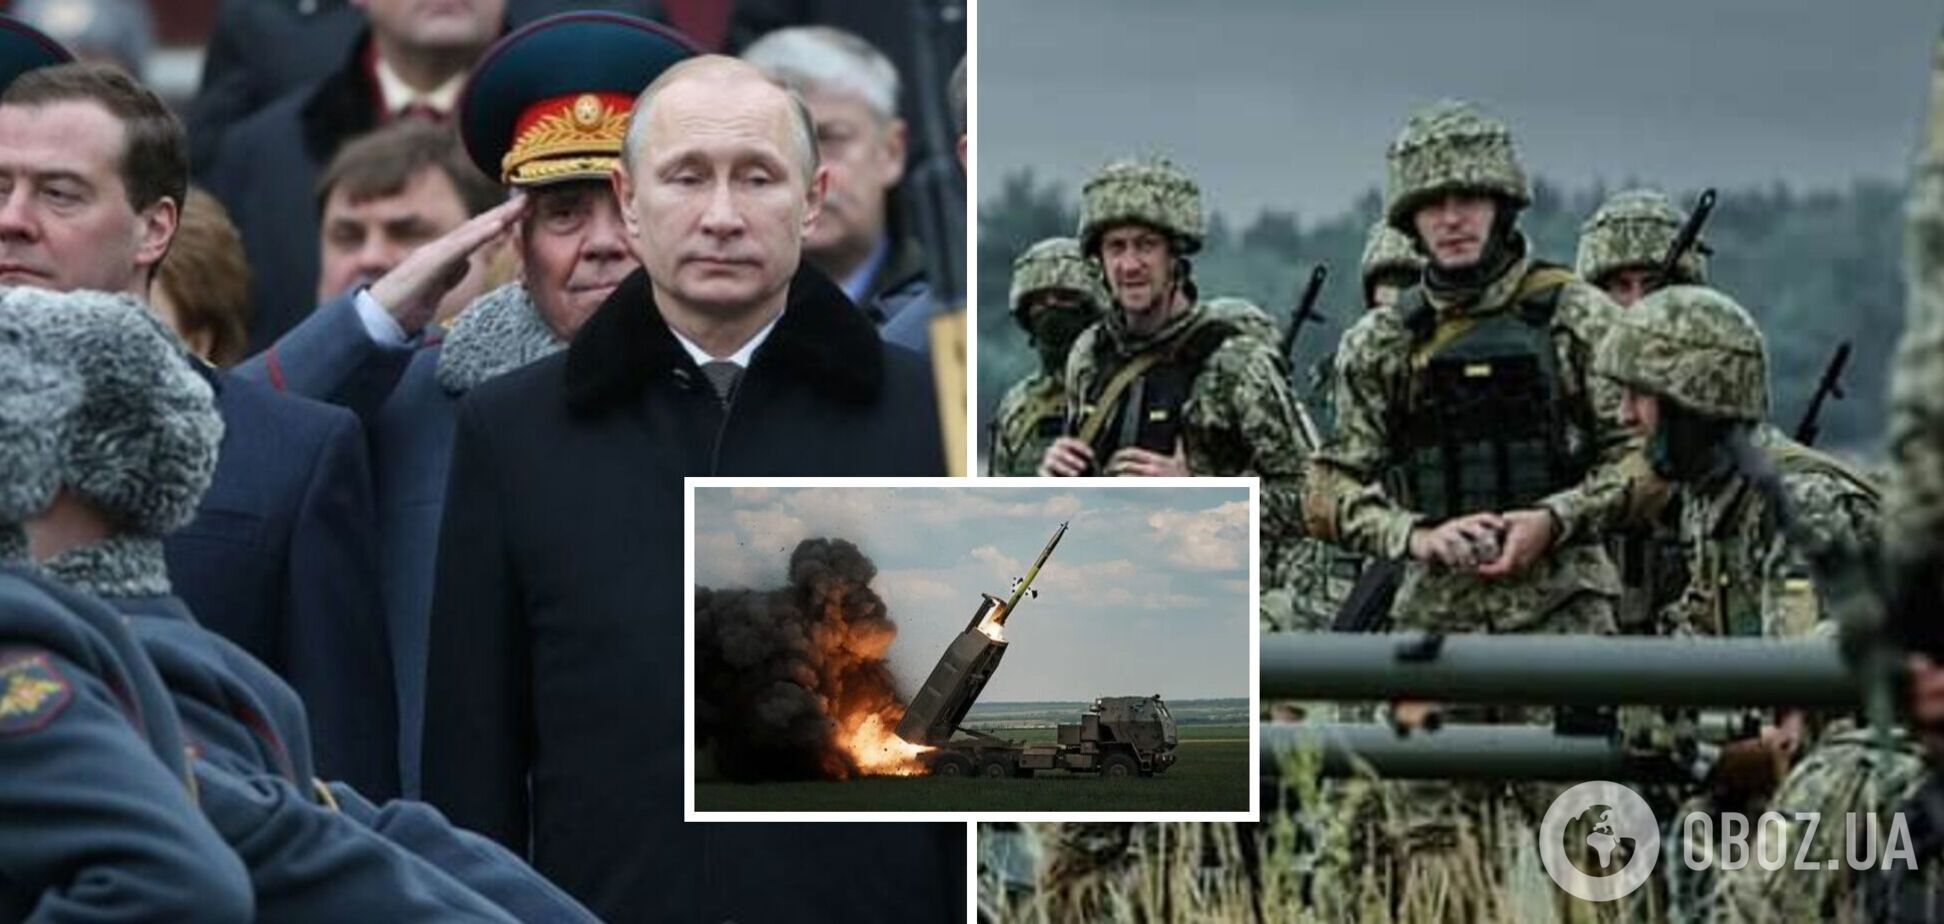 Путин ставит войну на паузу, Авдеевку оставляет для 'картинки': интервью с майором Гетьманом